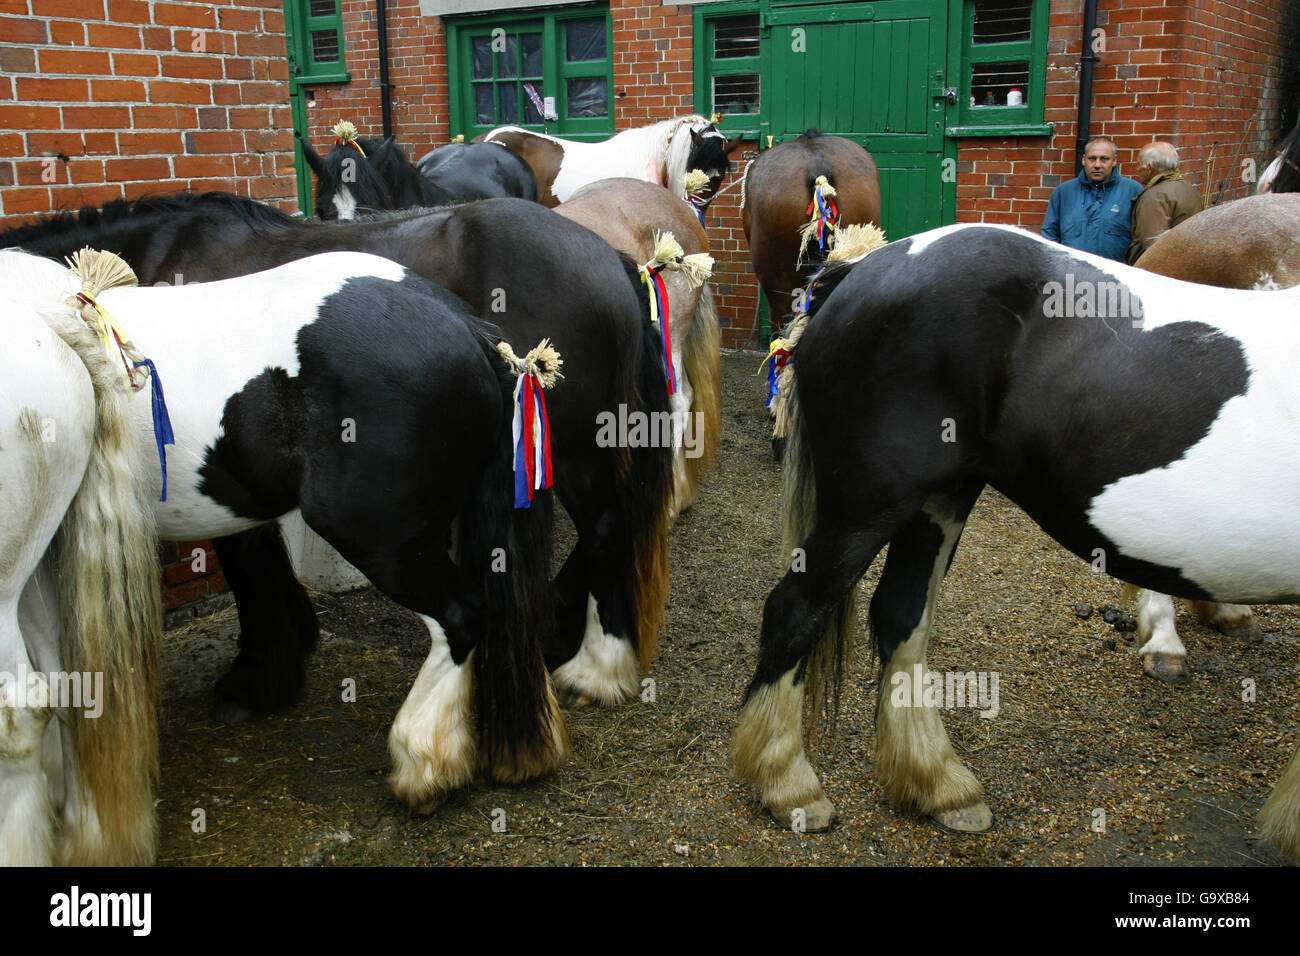 Ponys warten darauf, im jährlichen Wickham Horse Faire in der Nähe von Fareham, Hampshire, verkauft zu werden. Jedes Jahr kommen mehrere hundert Menschen, vor allem Roma-Zigeuner, in das ruhige Dorf, um ihre Pferde in einer Tradition zu handeln, die auf das 13. Jahrhundert zurückgeht, als es eine königliche Urkunde erhielt. Stockfoto